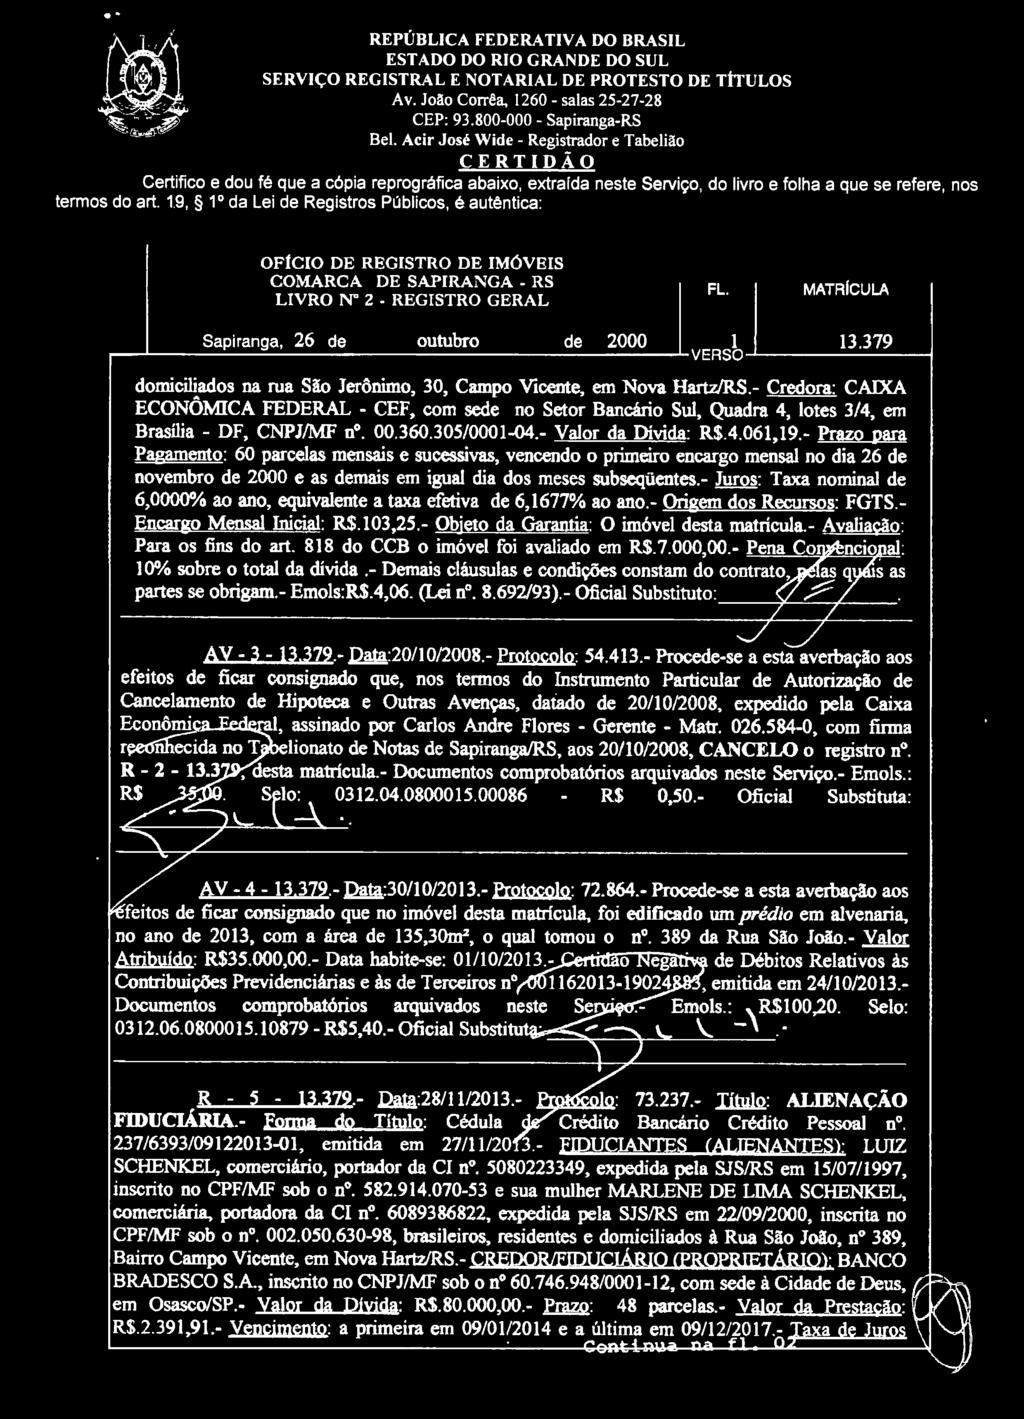 19, 1 o da Lei de Registros Públicos, é autêntica: OFÍCIO DE REGISTRO DE IMÓVEIS LIVRO N" 2 - REGISTRO GERAL MATRÍCULA Sapiranga, 26 de outubro de 2000 1 13.